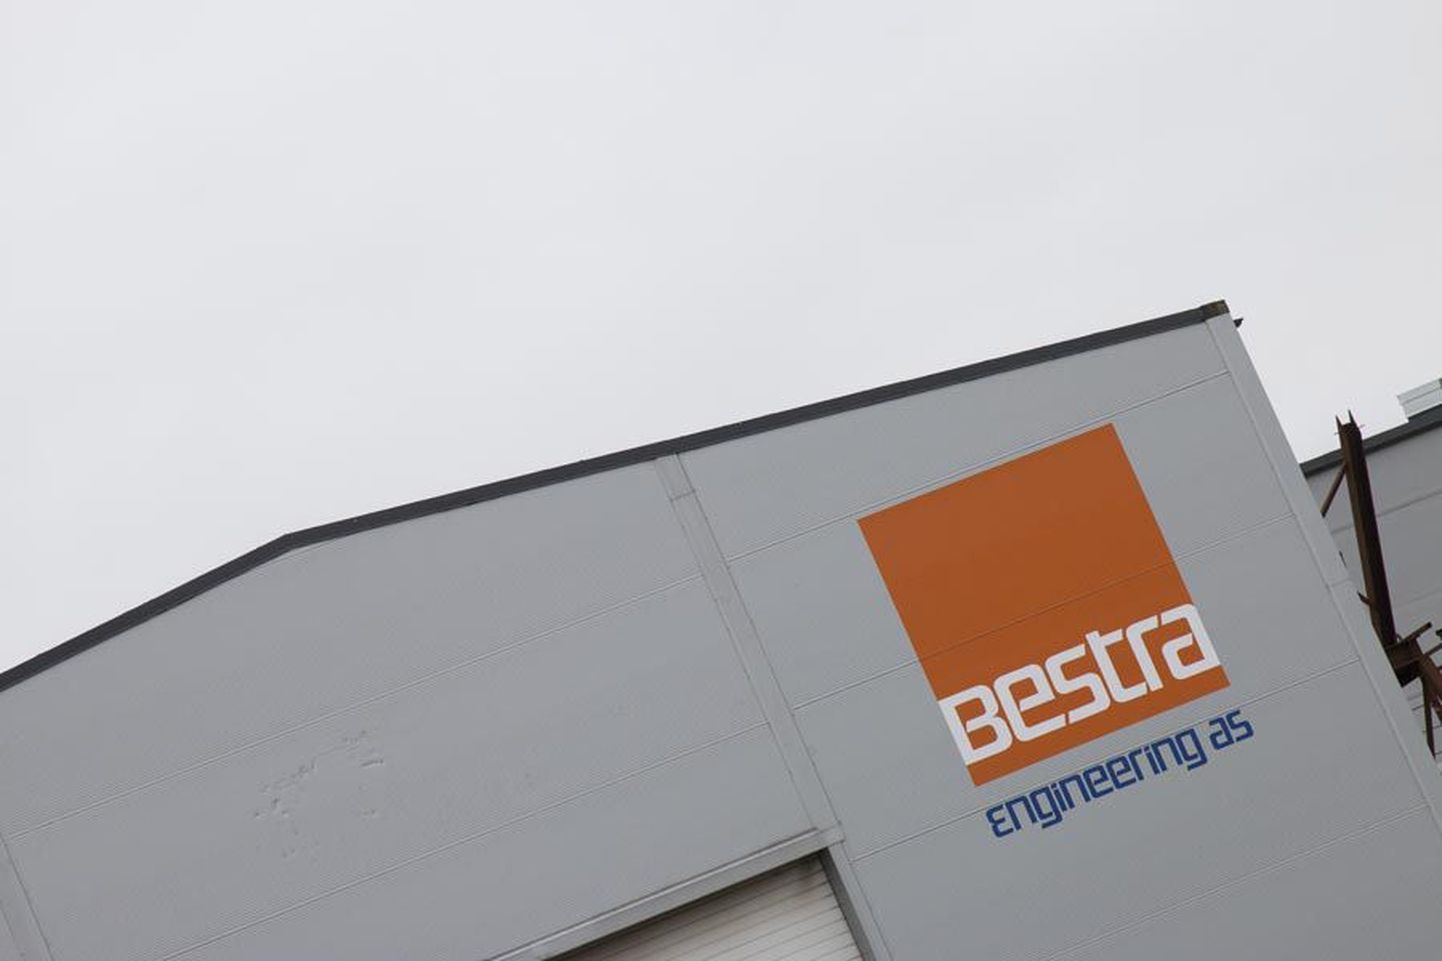 Peamiselt Norra omanikele kuuluvasse Bestra kontserni kuulub mitu ettevõtet. Neist kõige olulisemaks võib pidada aktsiaseltsi Bestra Engineering, mille tootmishooned ja -seadmed asuvad Viljandi lähedal väikeses Päri külas.